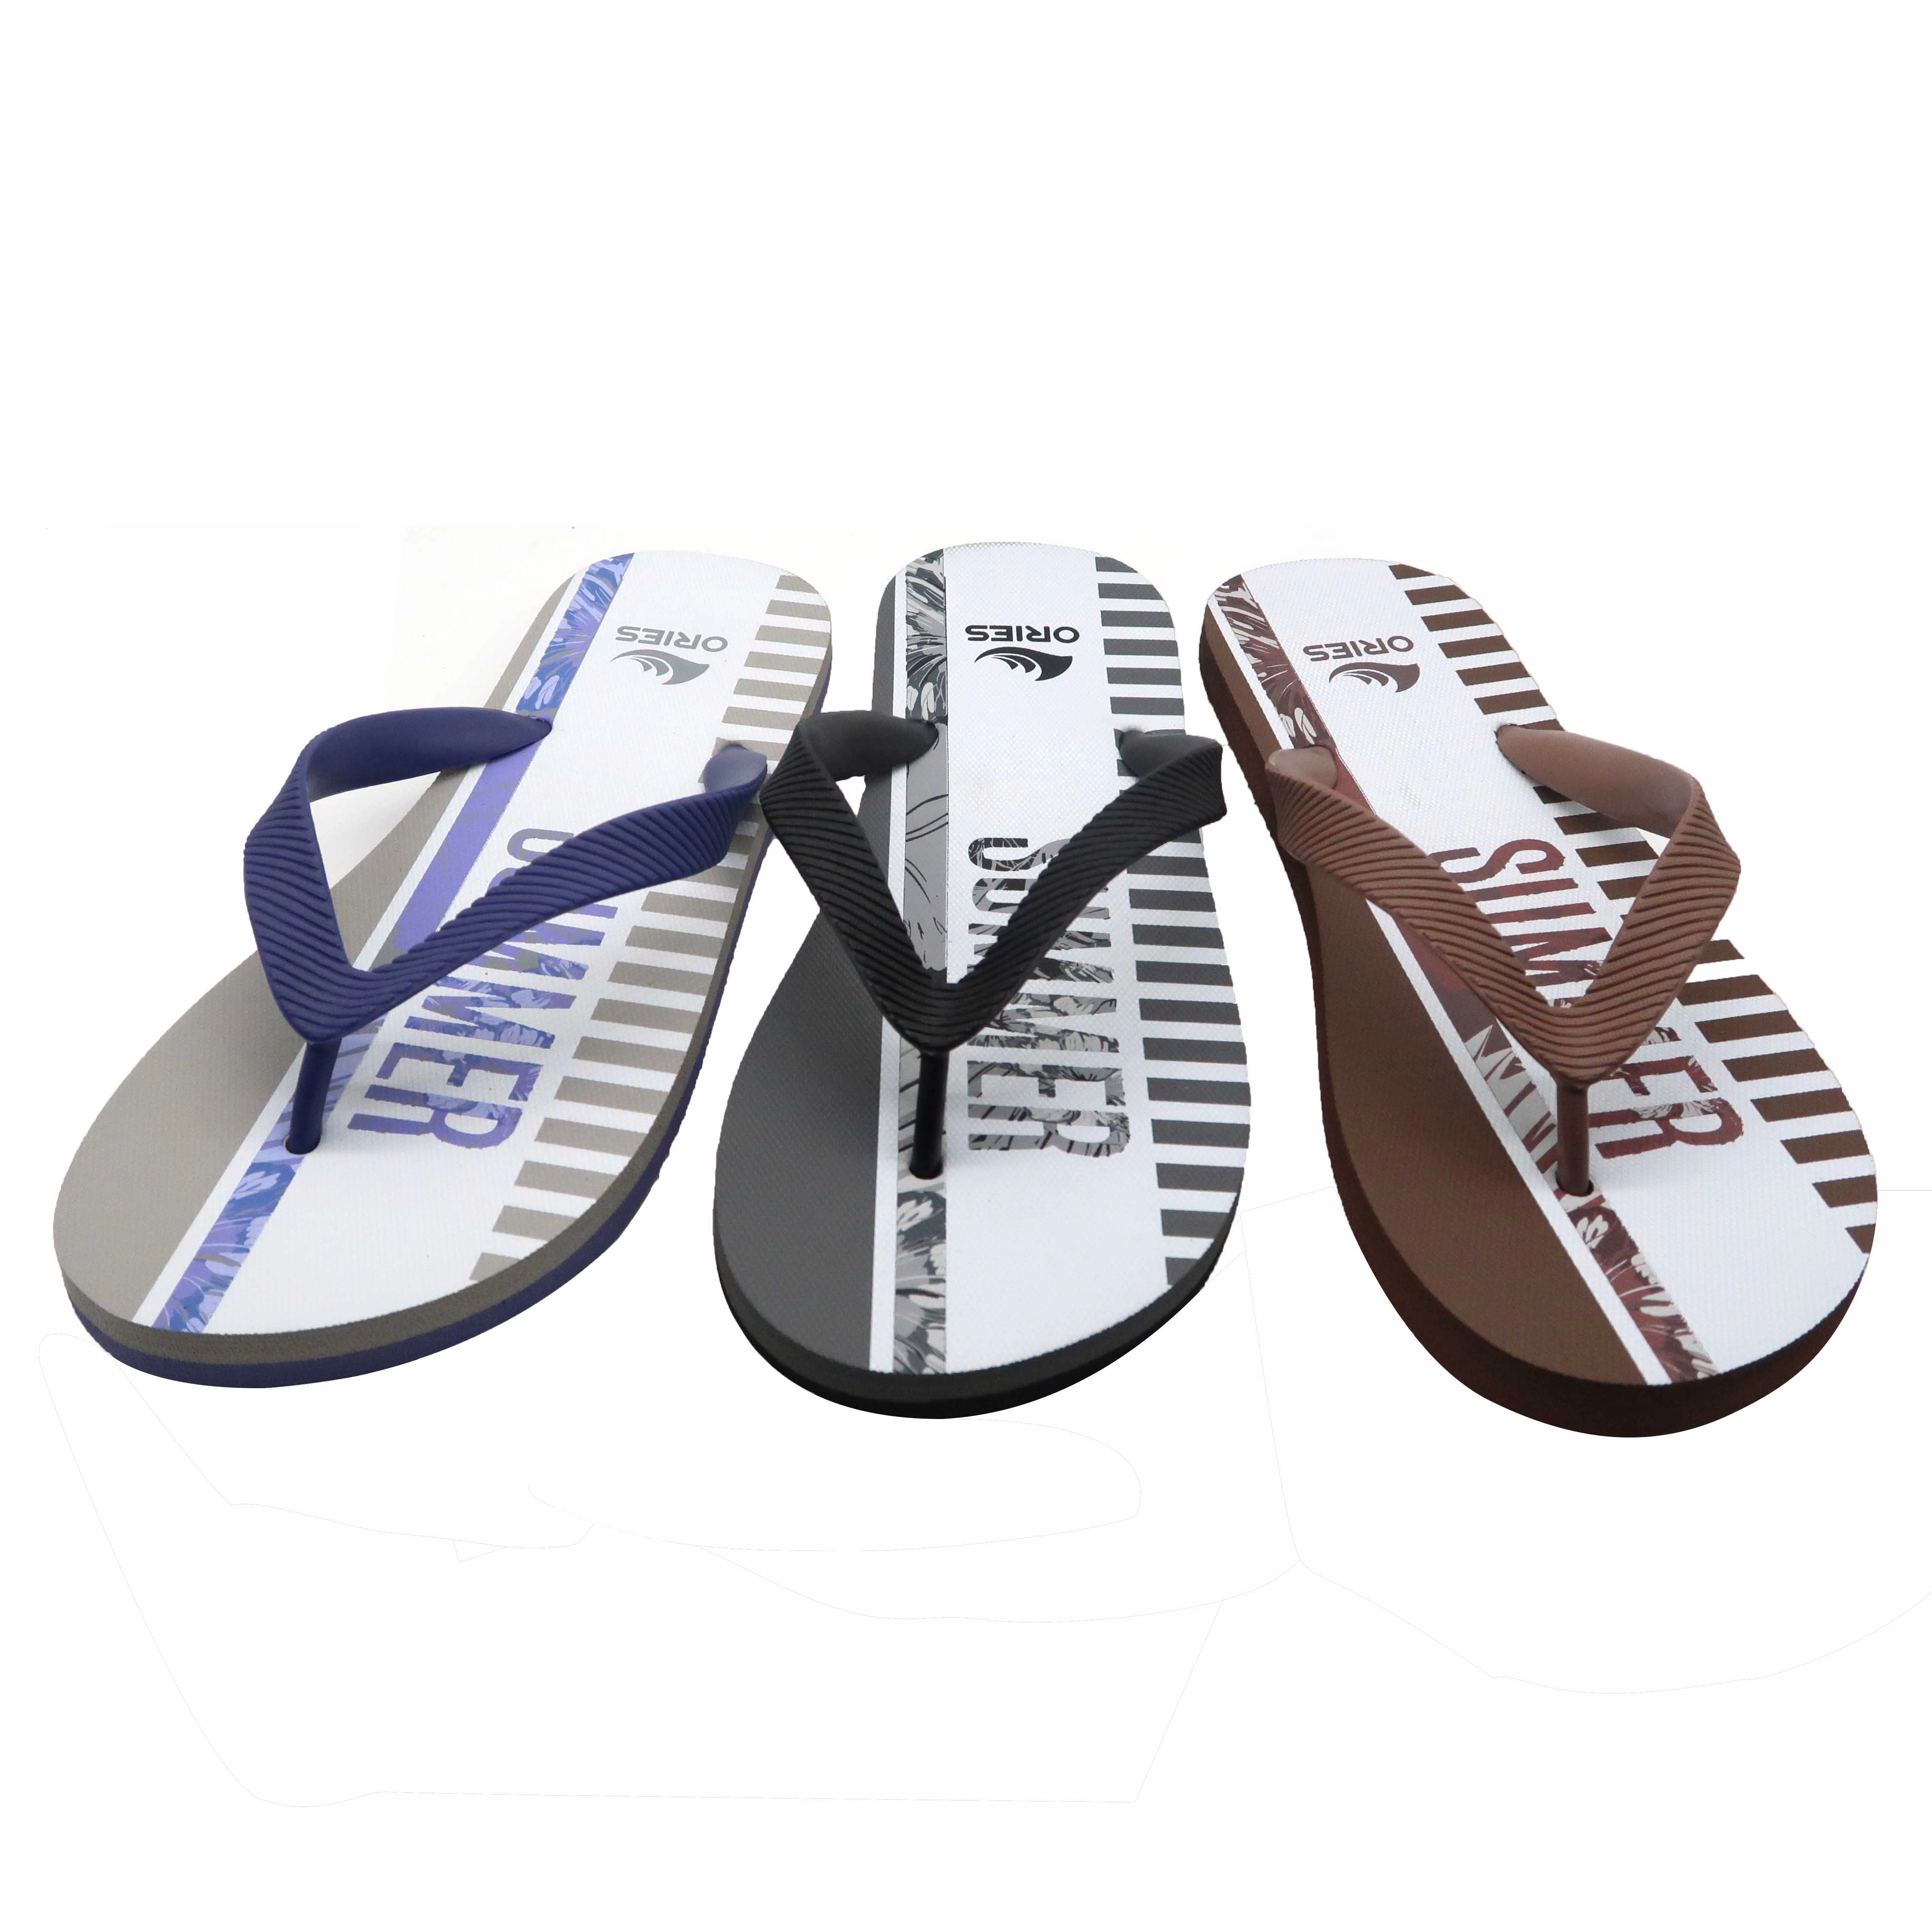 Giảm giá thiết kế mới phổ biến bền màu tím rắn chắc nam giới giá rẻ giày sandal xỏ ngón cao su đi biển cỡ lớn đi biển có logo